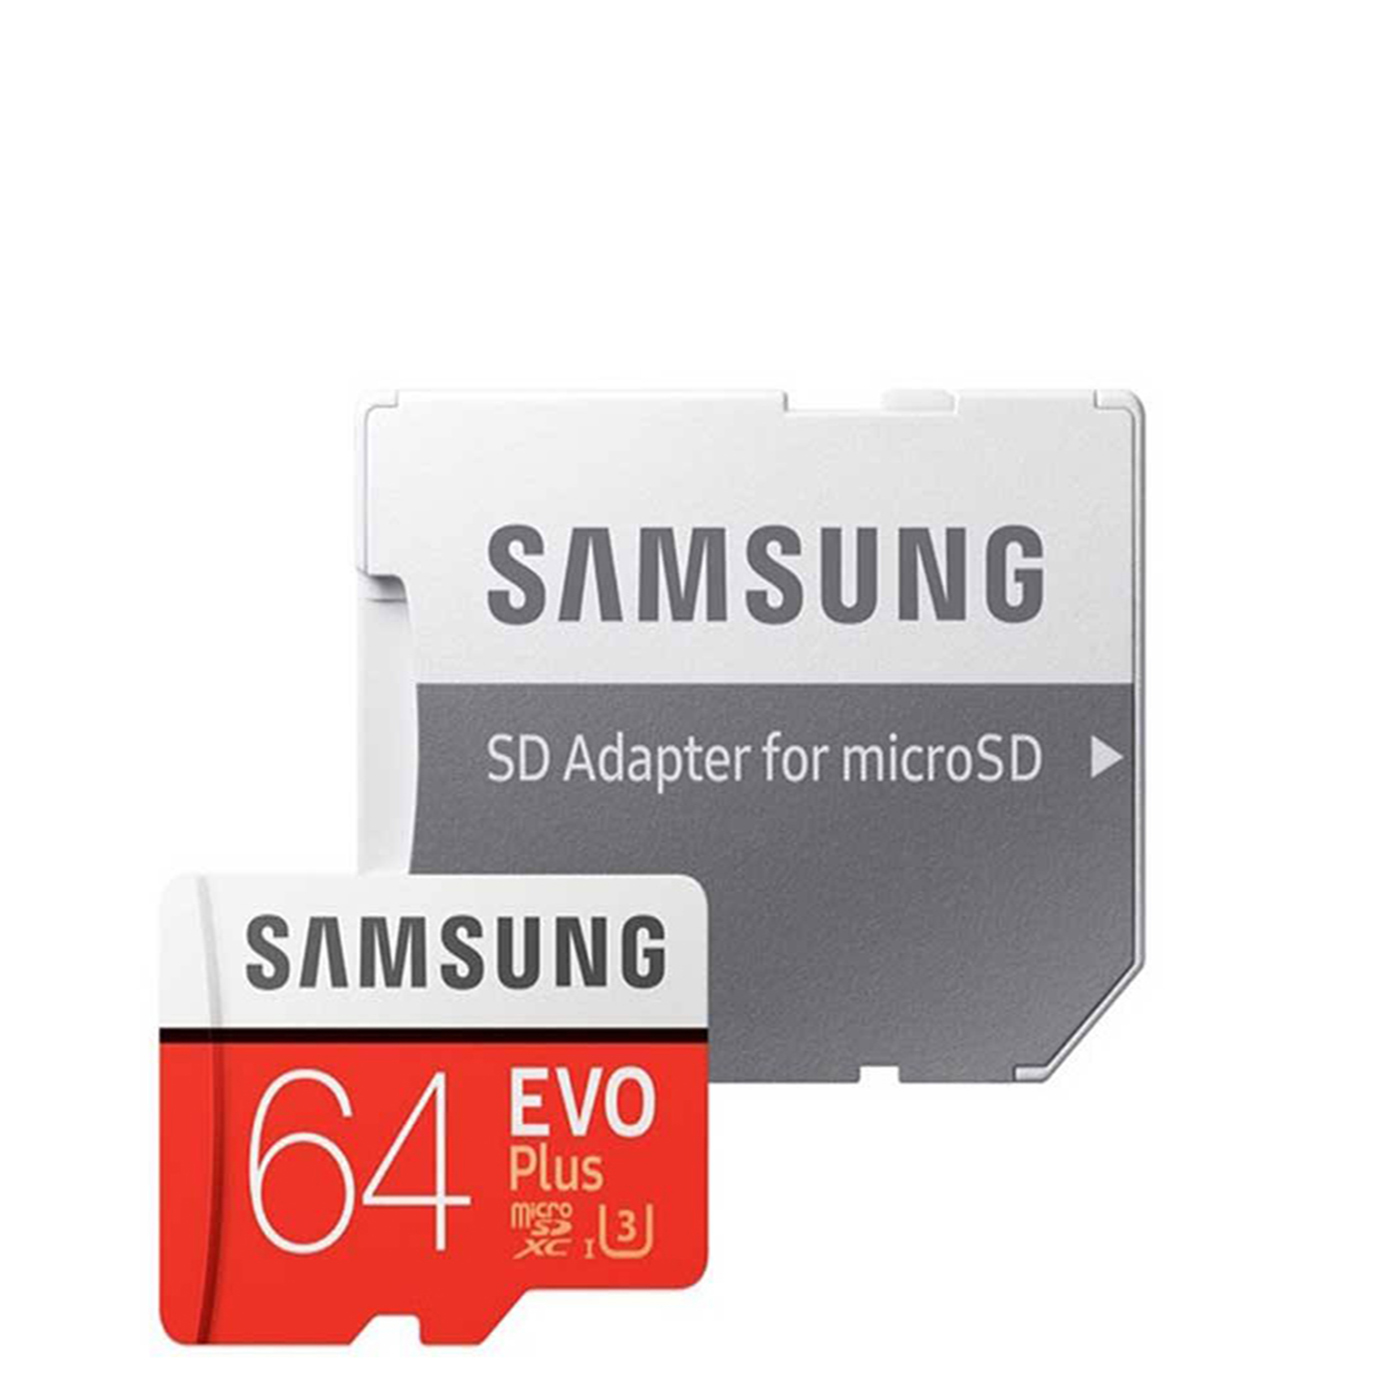 کارت حافظه microSDXC  مدل Evo Plus کلاس 10 استاندارد UHS-I U3 سرعت 95MBps ظرفیت 64 گیگابایت به همراه آداپتور SD